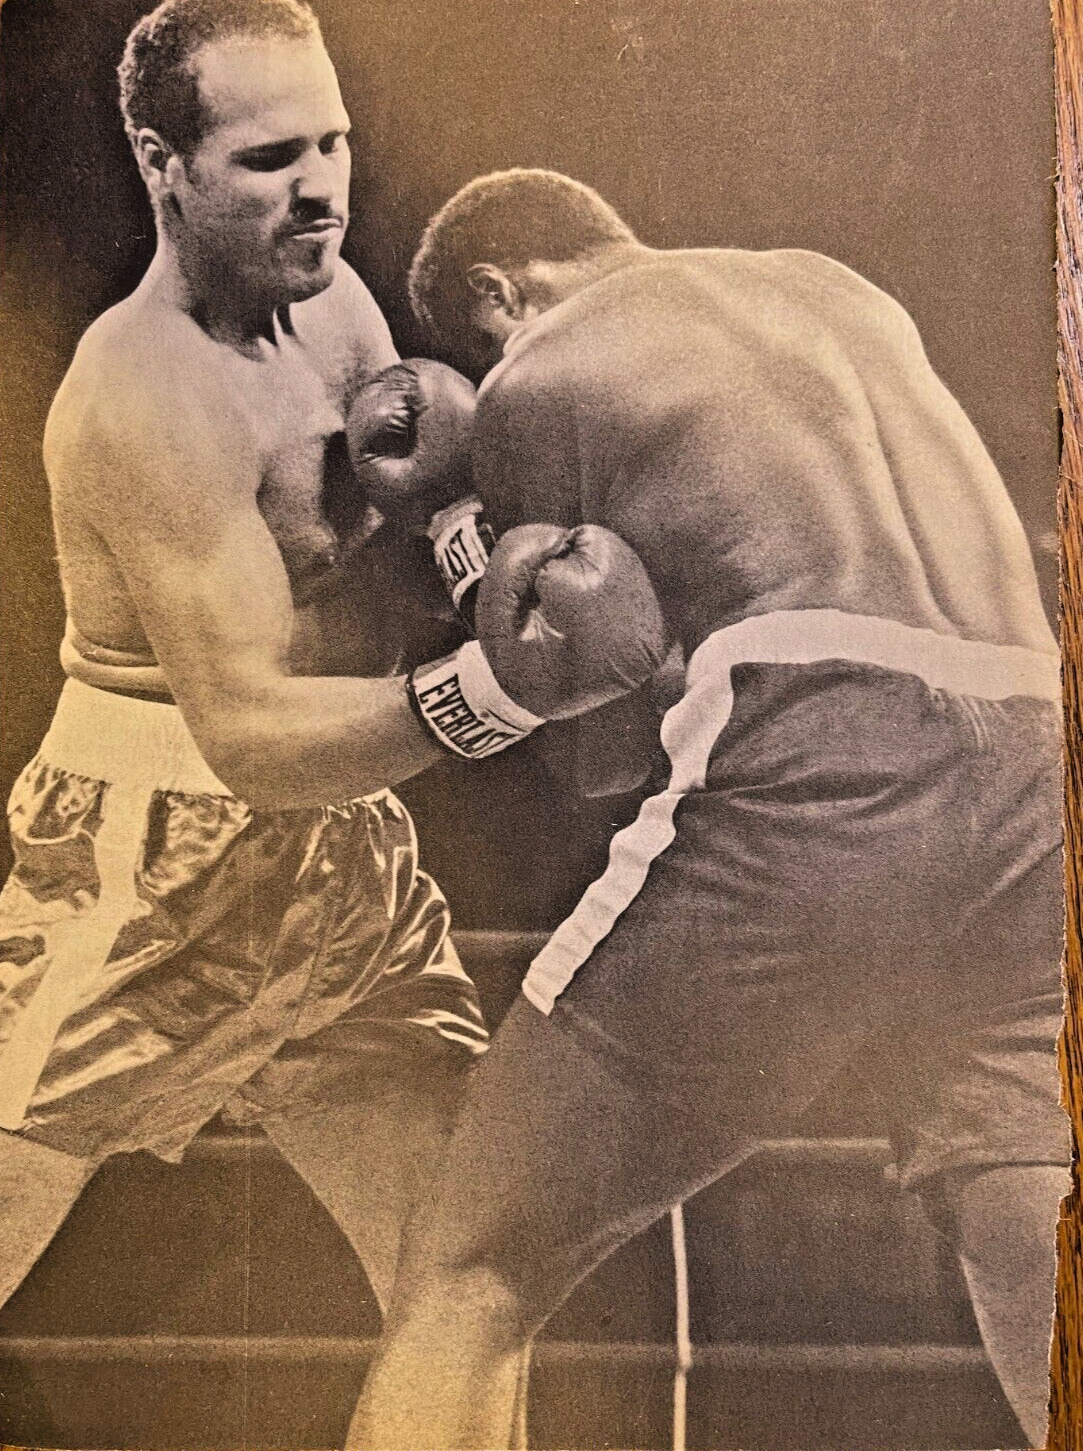 1983 Boxer David Bey